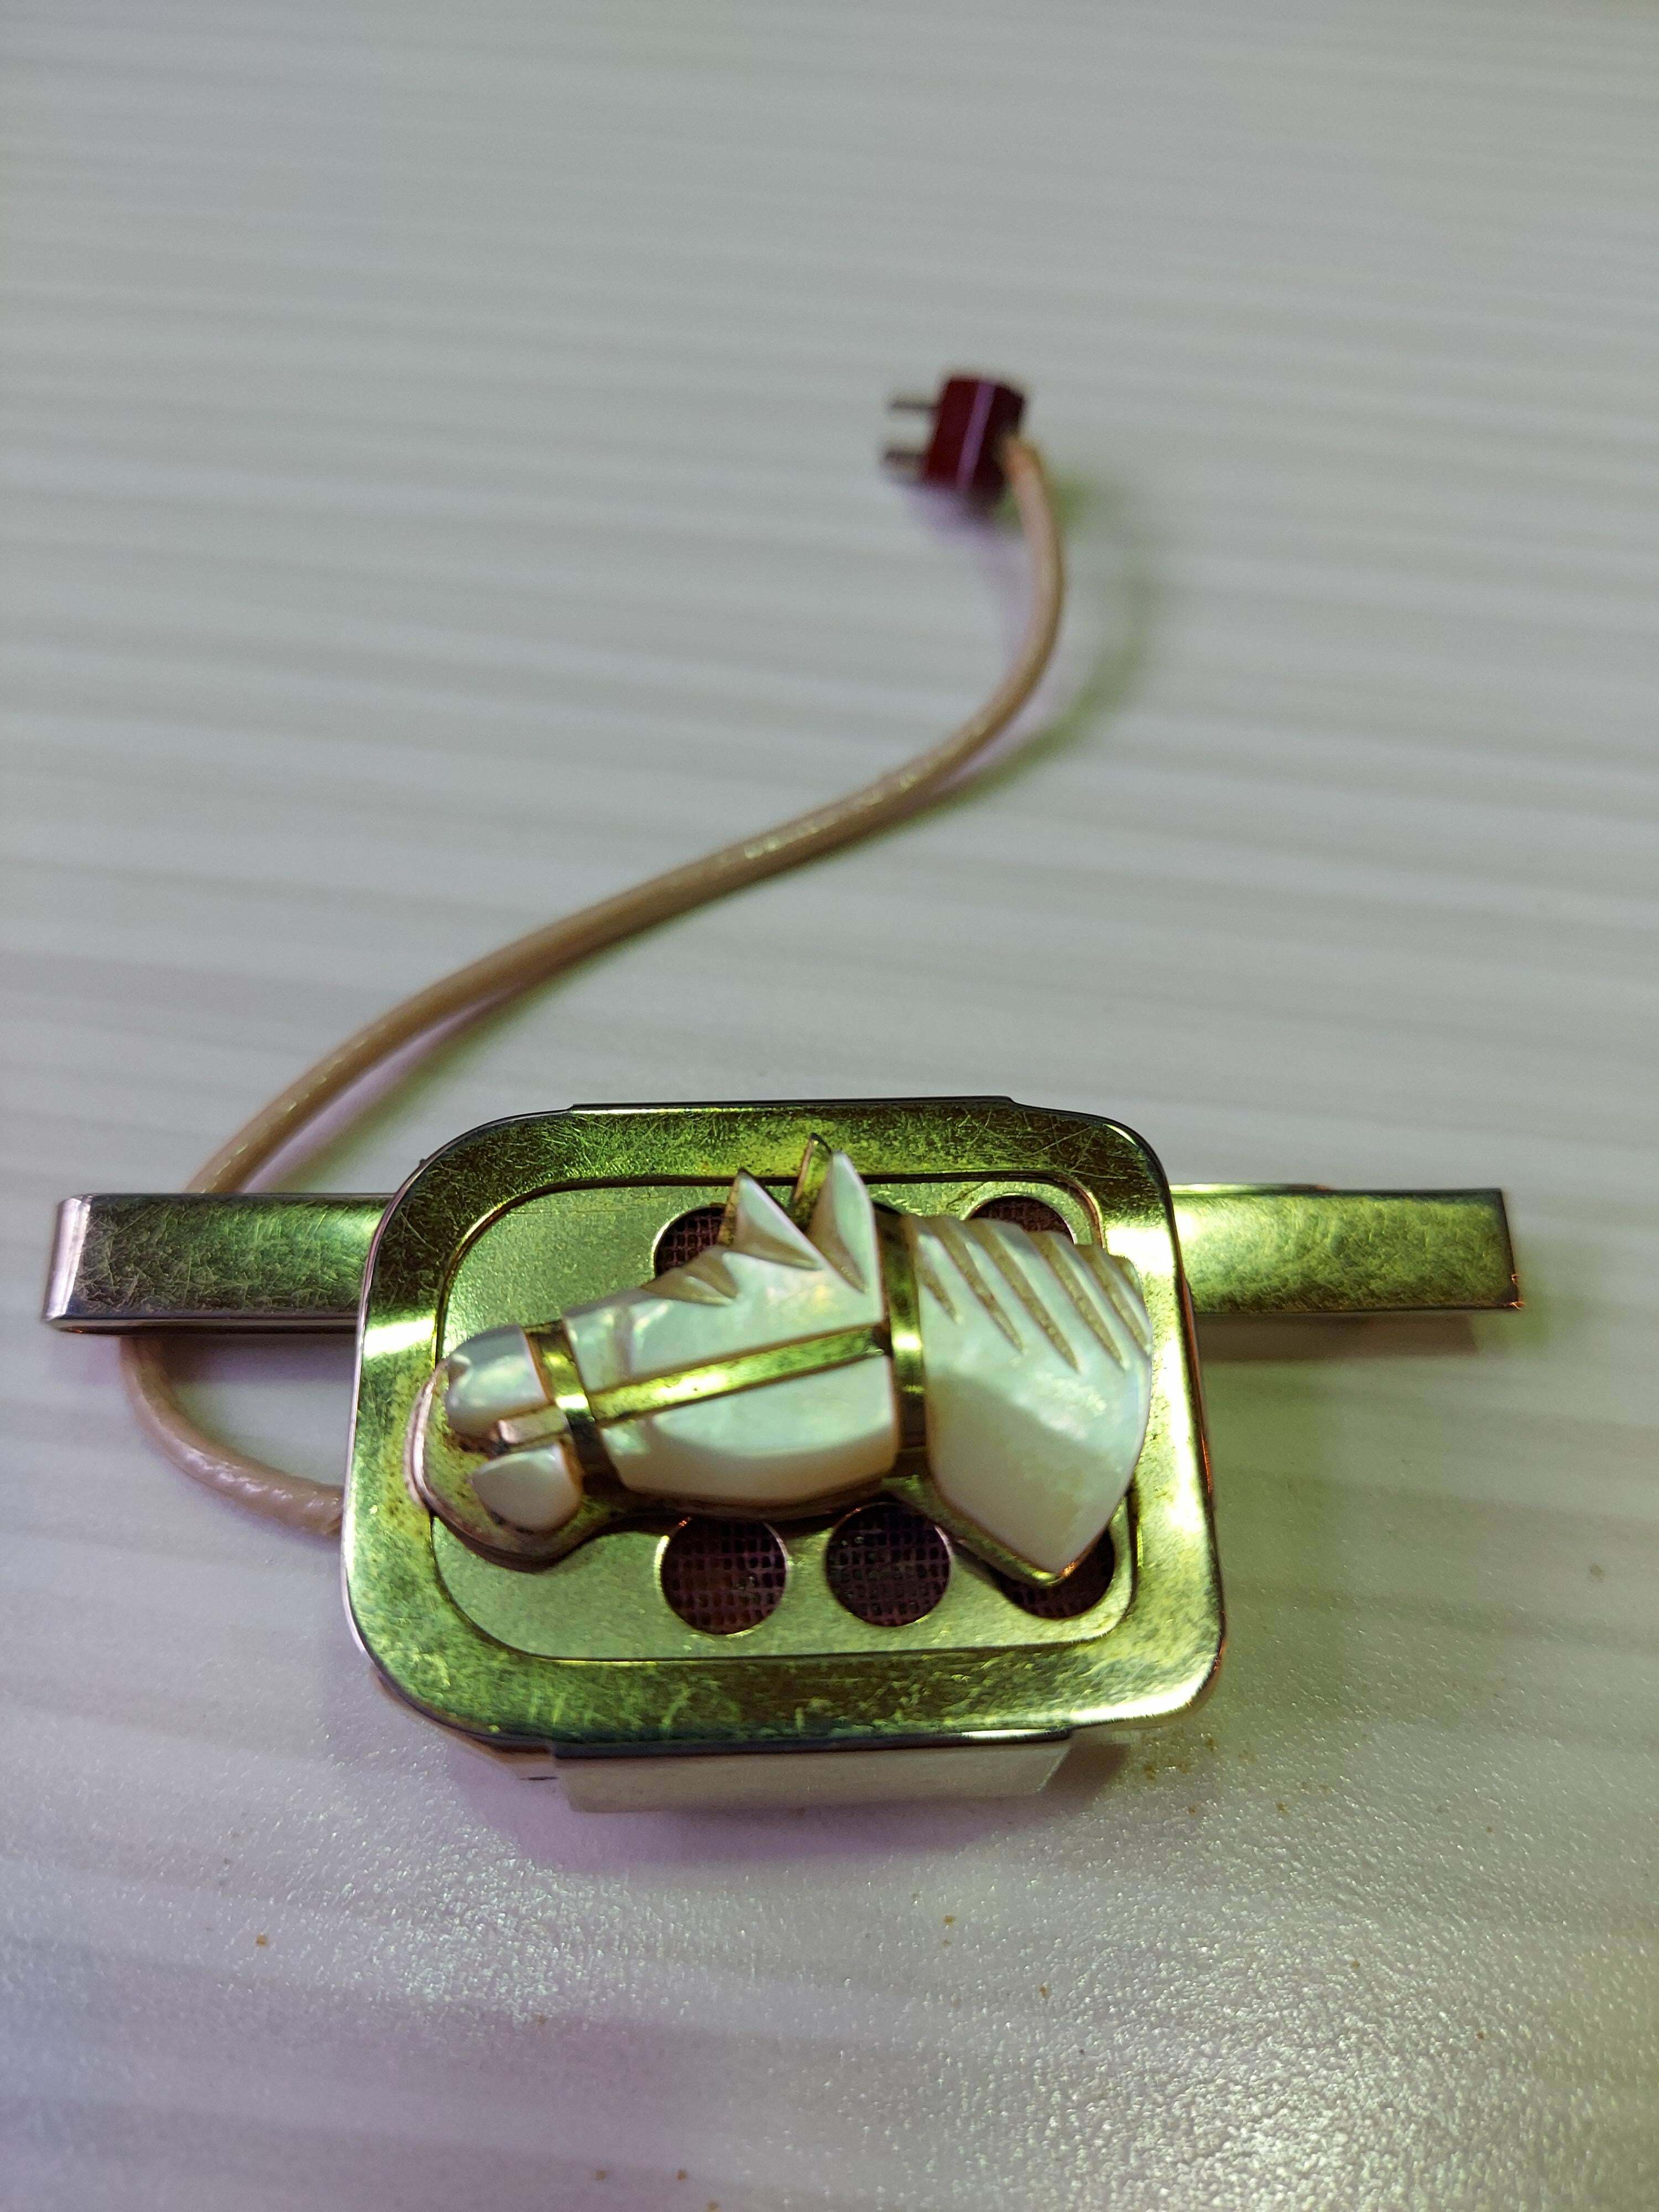 C'est un haut-parleur plaqué or avec un court cordon à deux broches à l'extrémité, il y a aussi un clip plaqué or avec une opale représentant un cheval dessus.